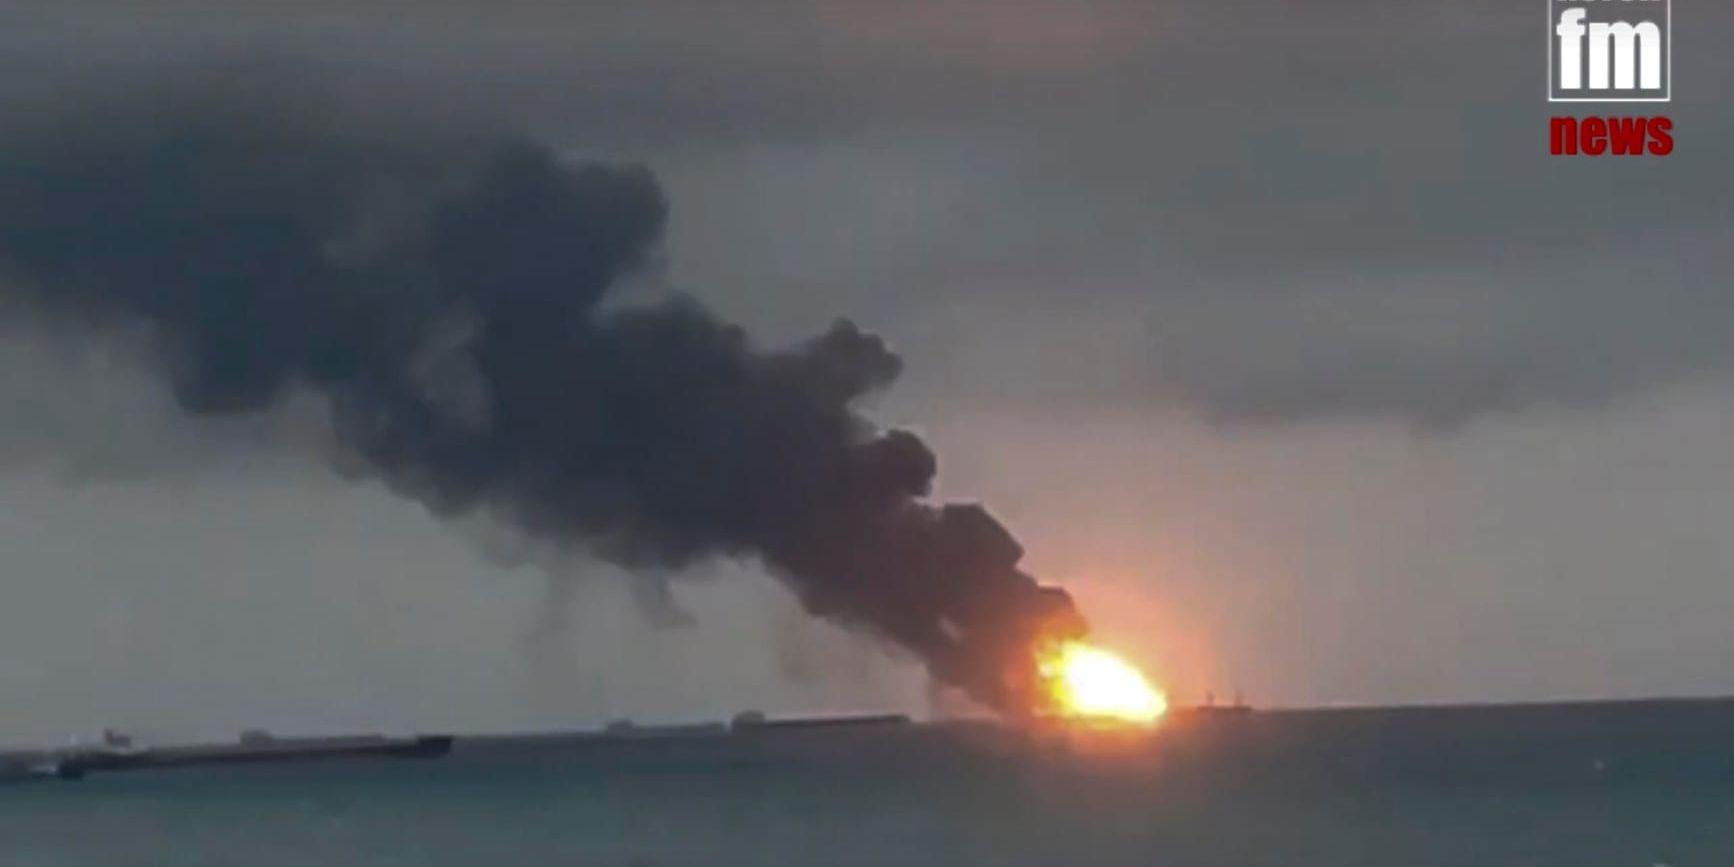 En stillbild från en video från nyhetssajten Kerch.fm visar branden på de två fartygen vid Kertjsundet på måndagen.